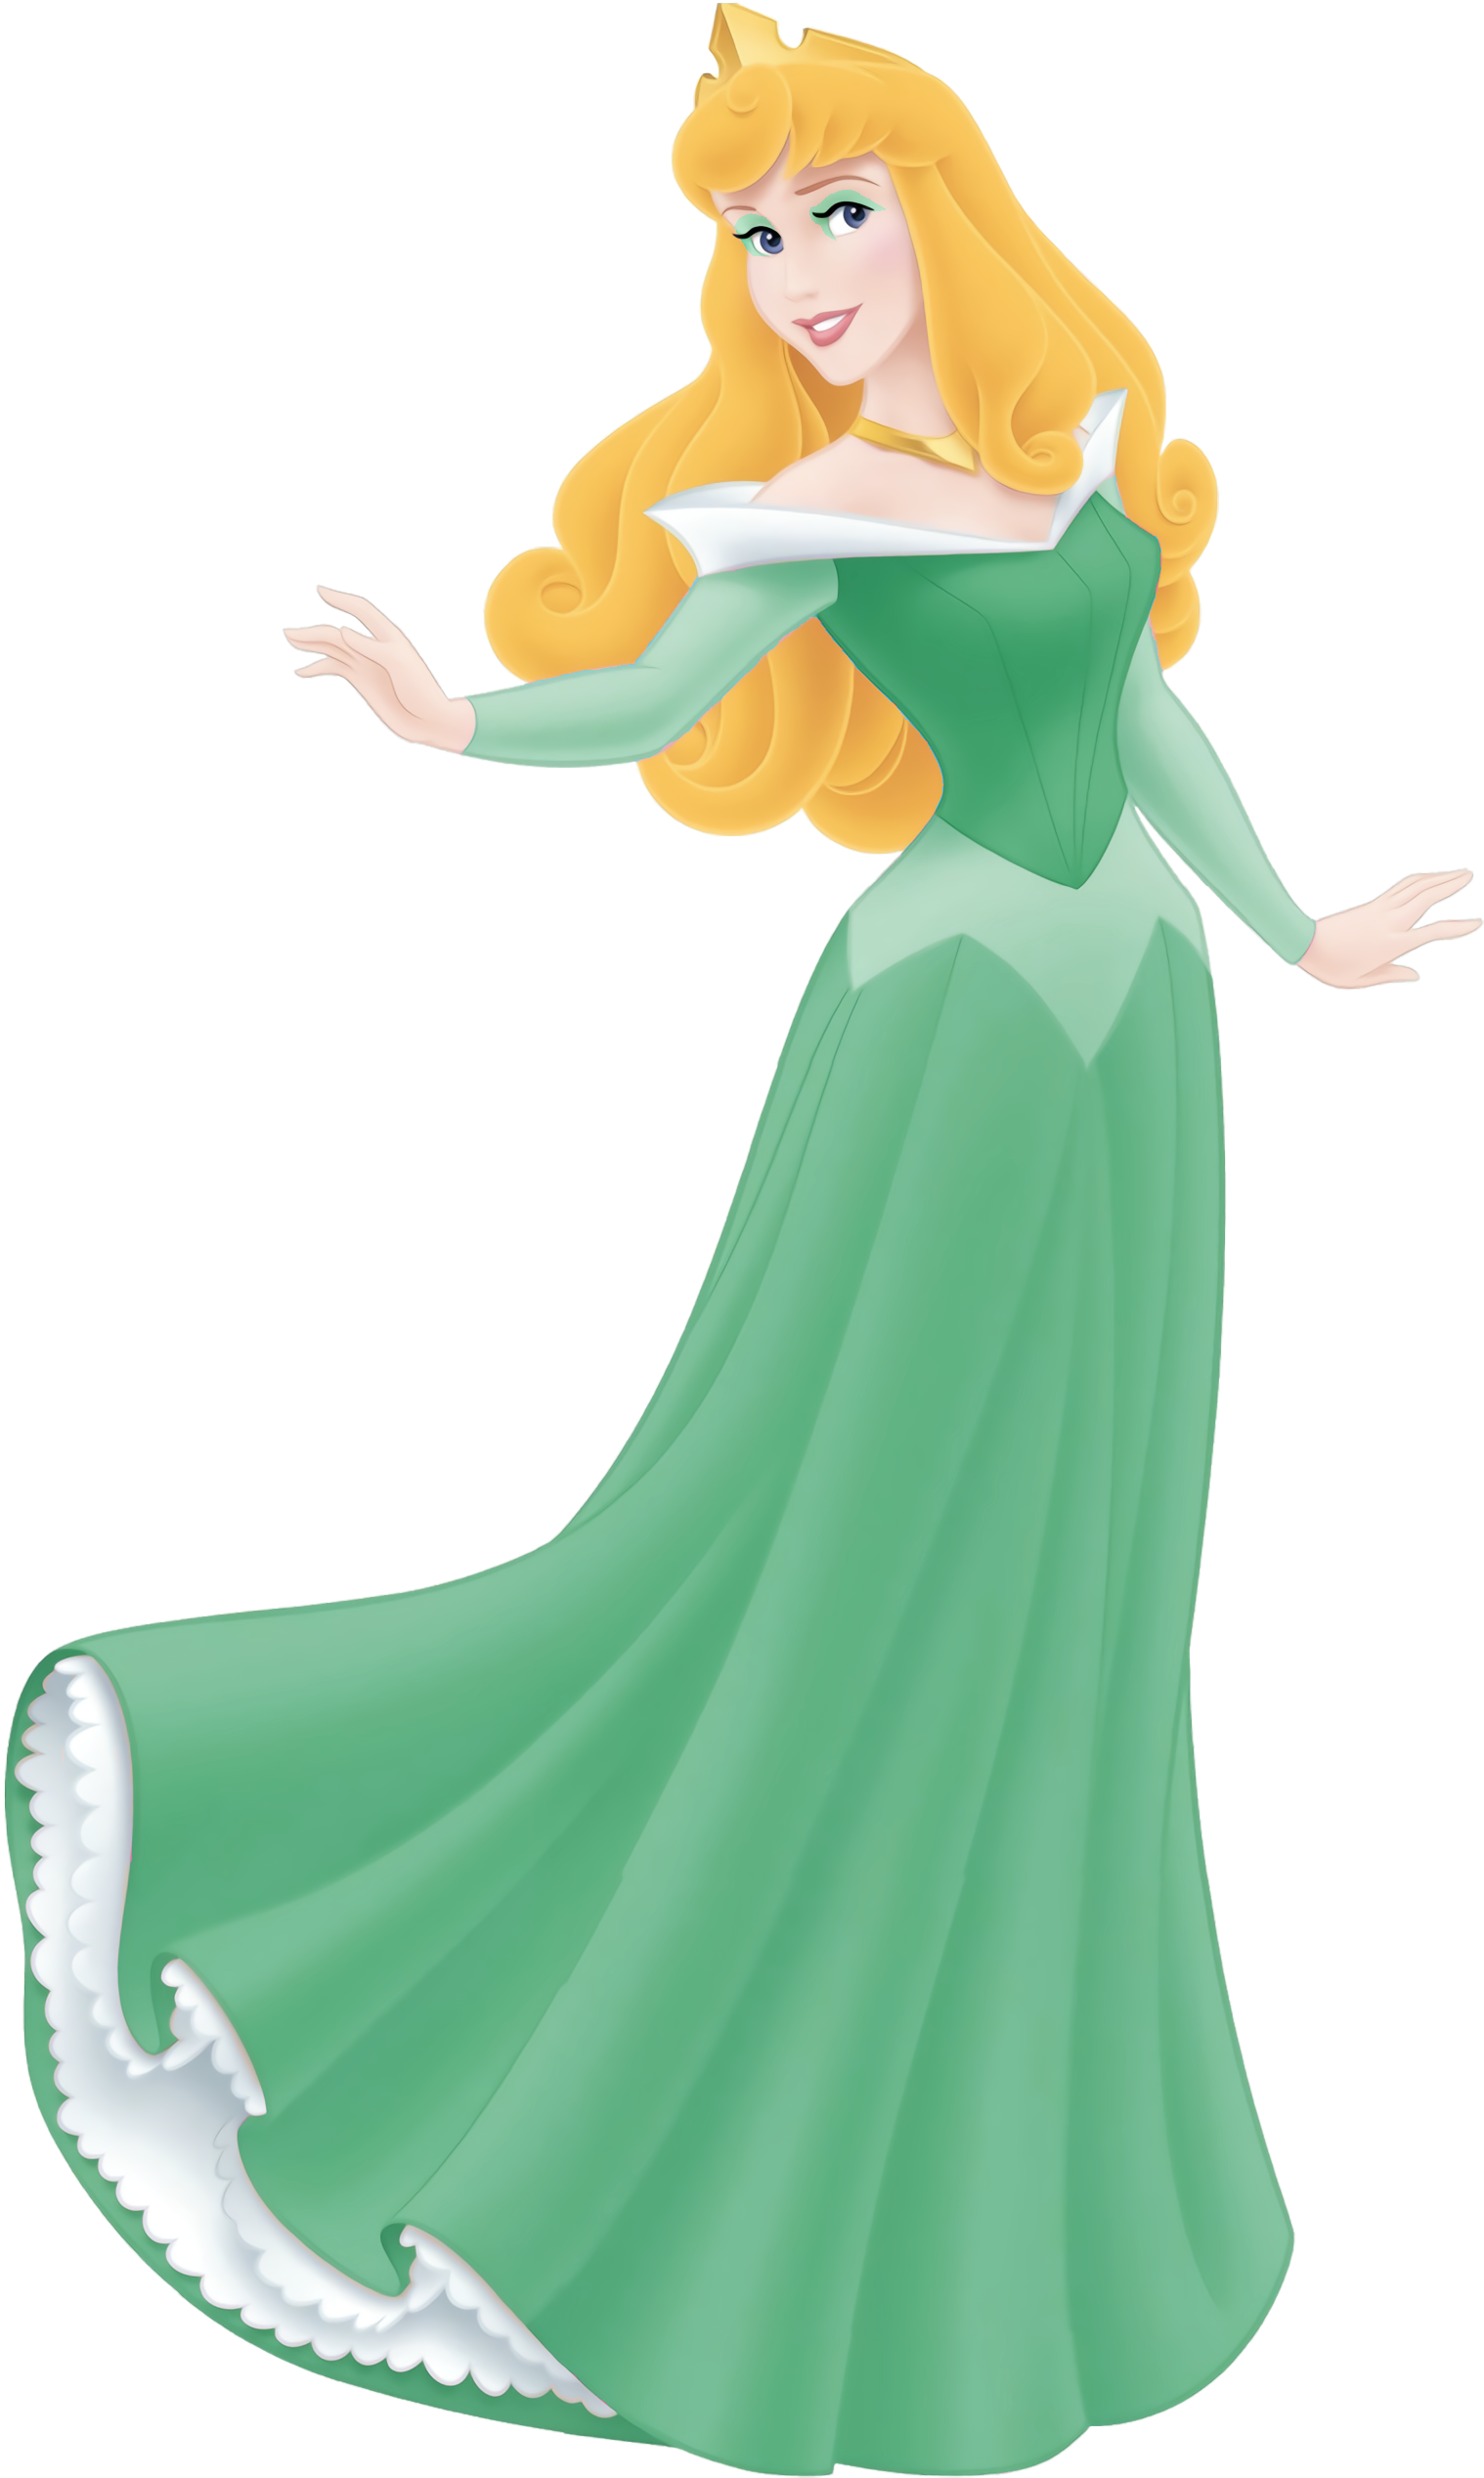 Princess Aurora in Green #43 by MermaidMelodyEdits on DeviantArt